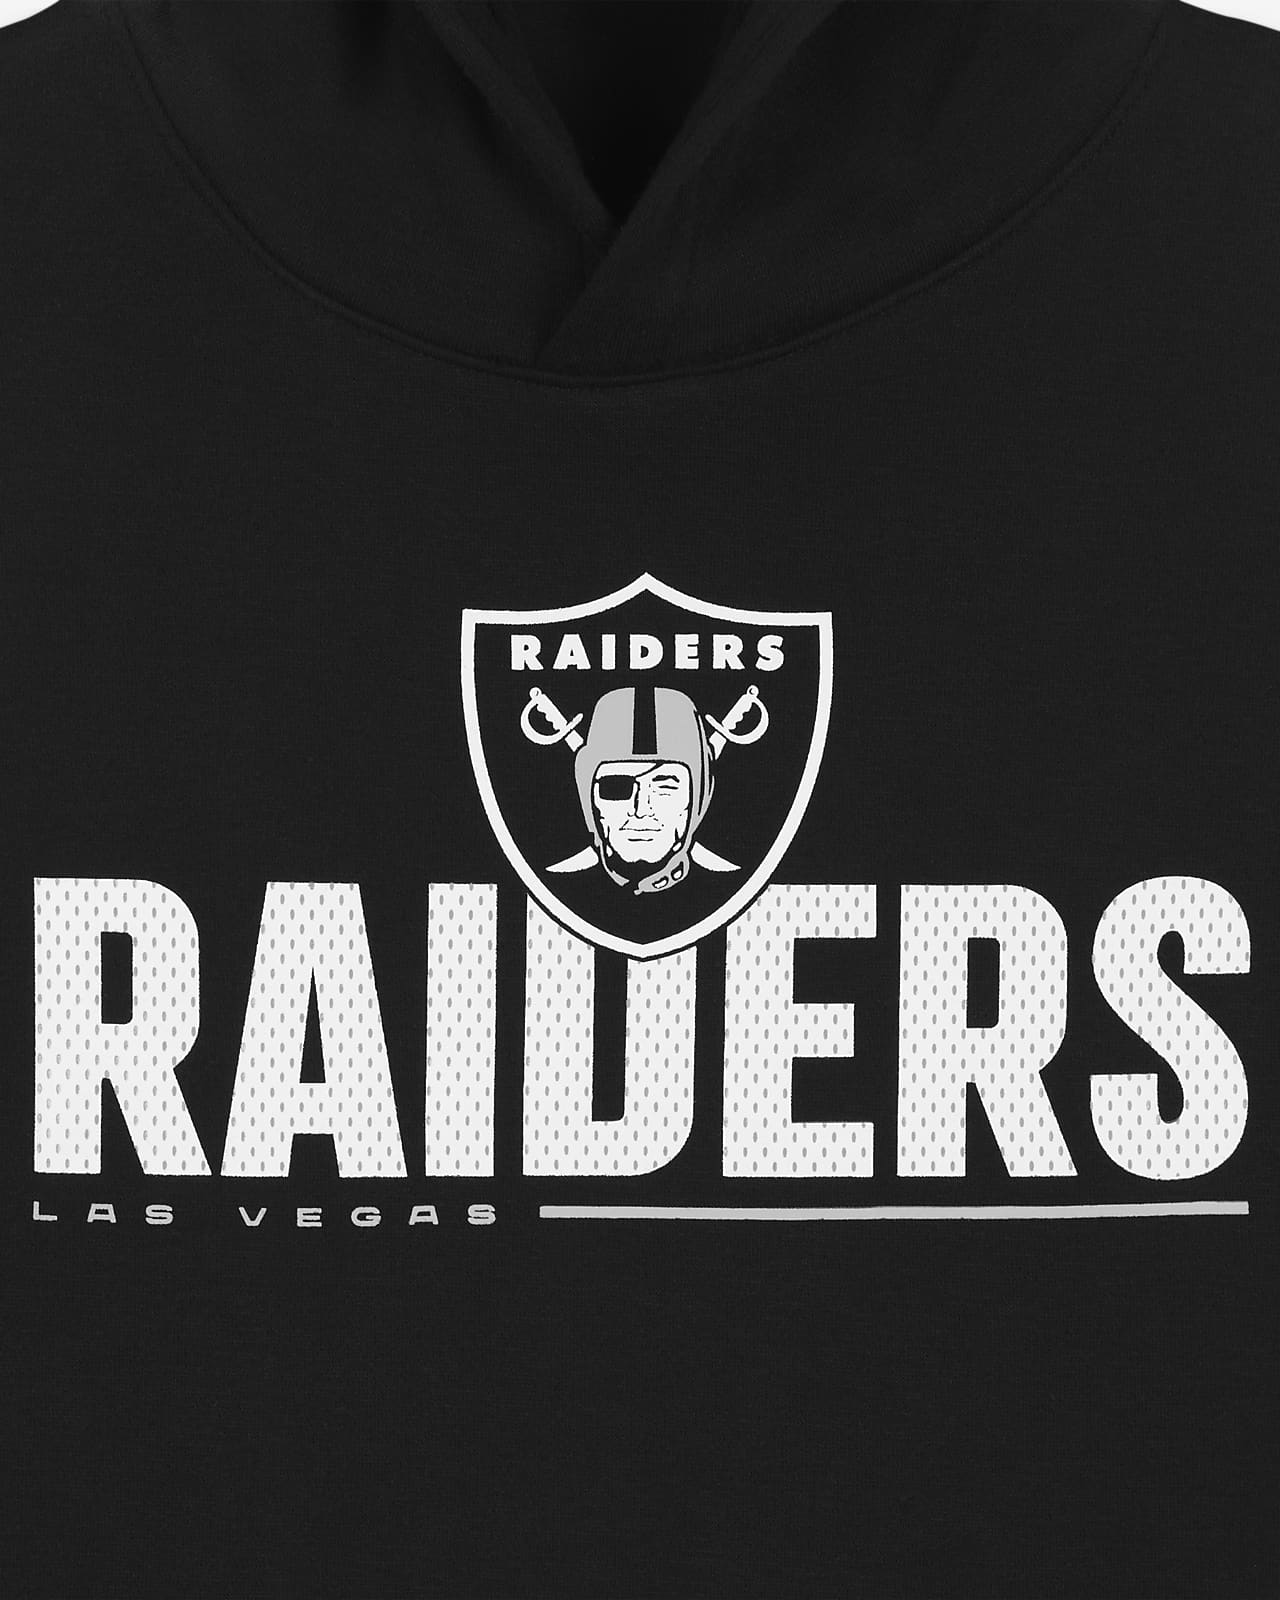 Las Vegas Raiders Rewind Club Men’s Nike NFL Pullover Hoodie